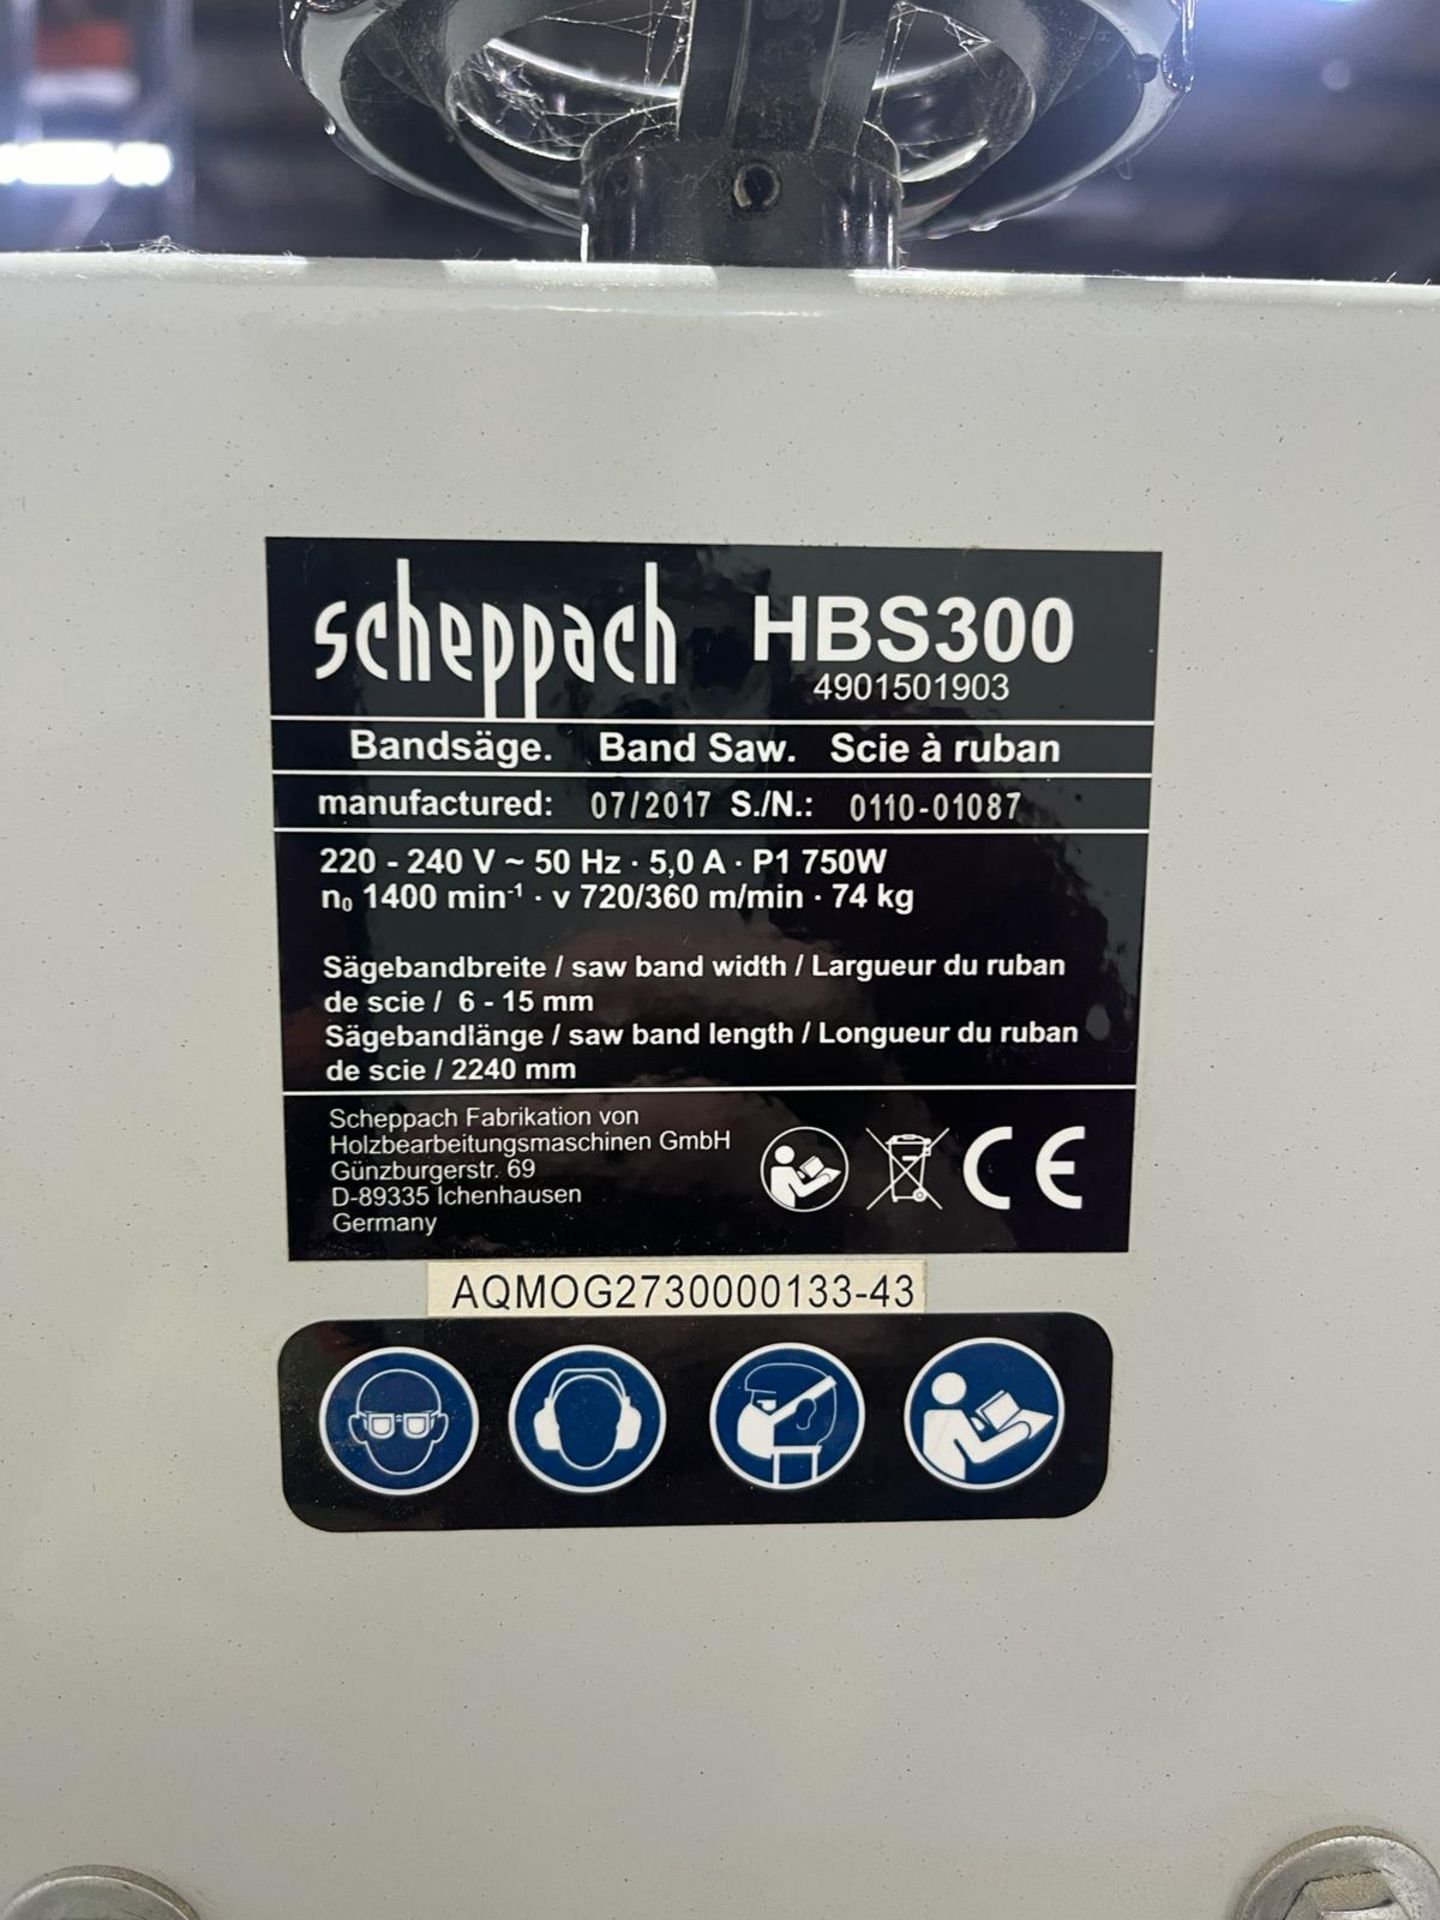 Scheppach HBS300 Bandsaw - Image 2 of 6